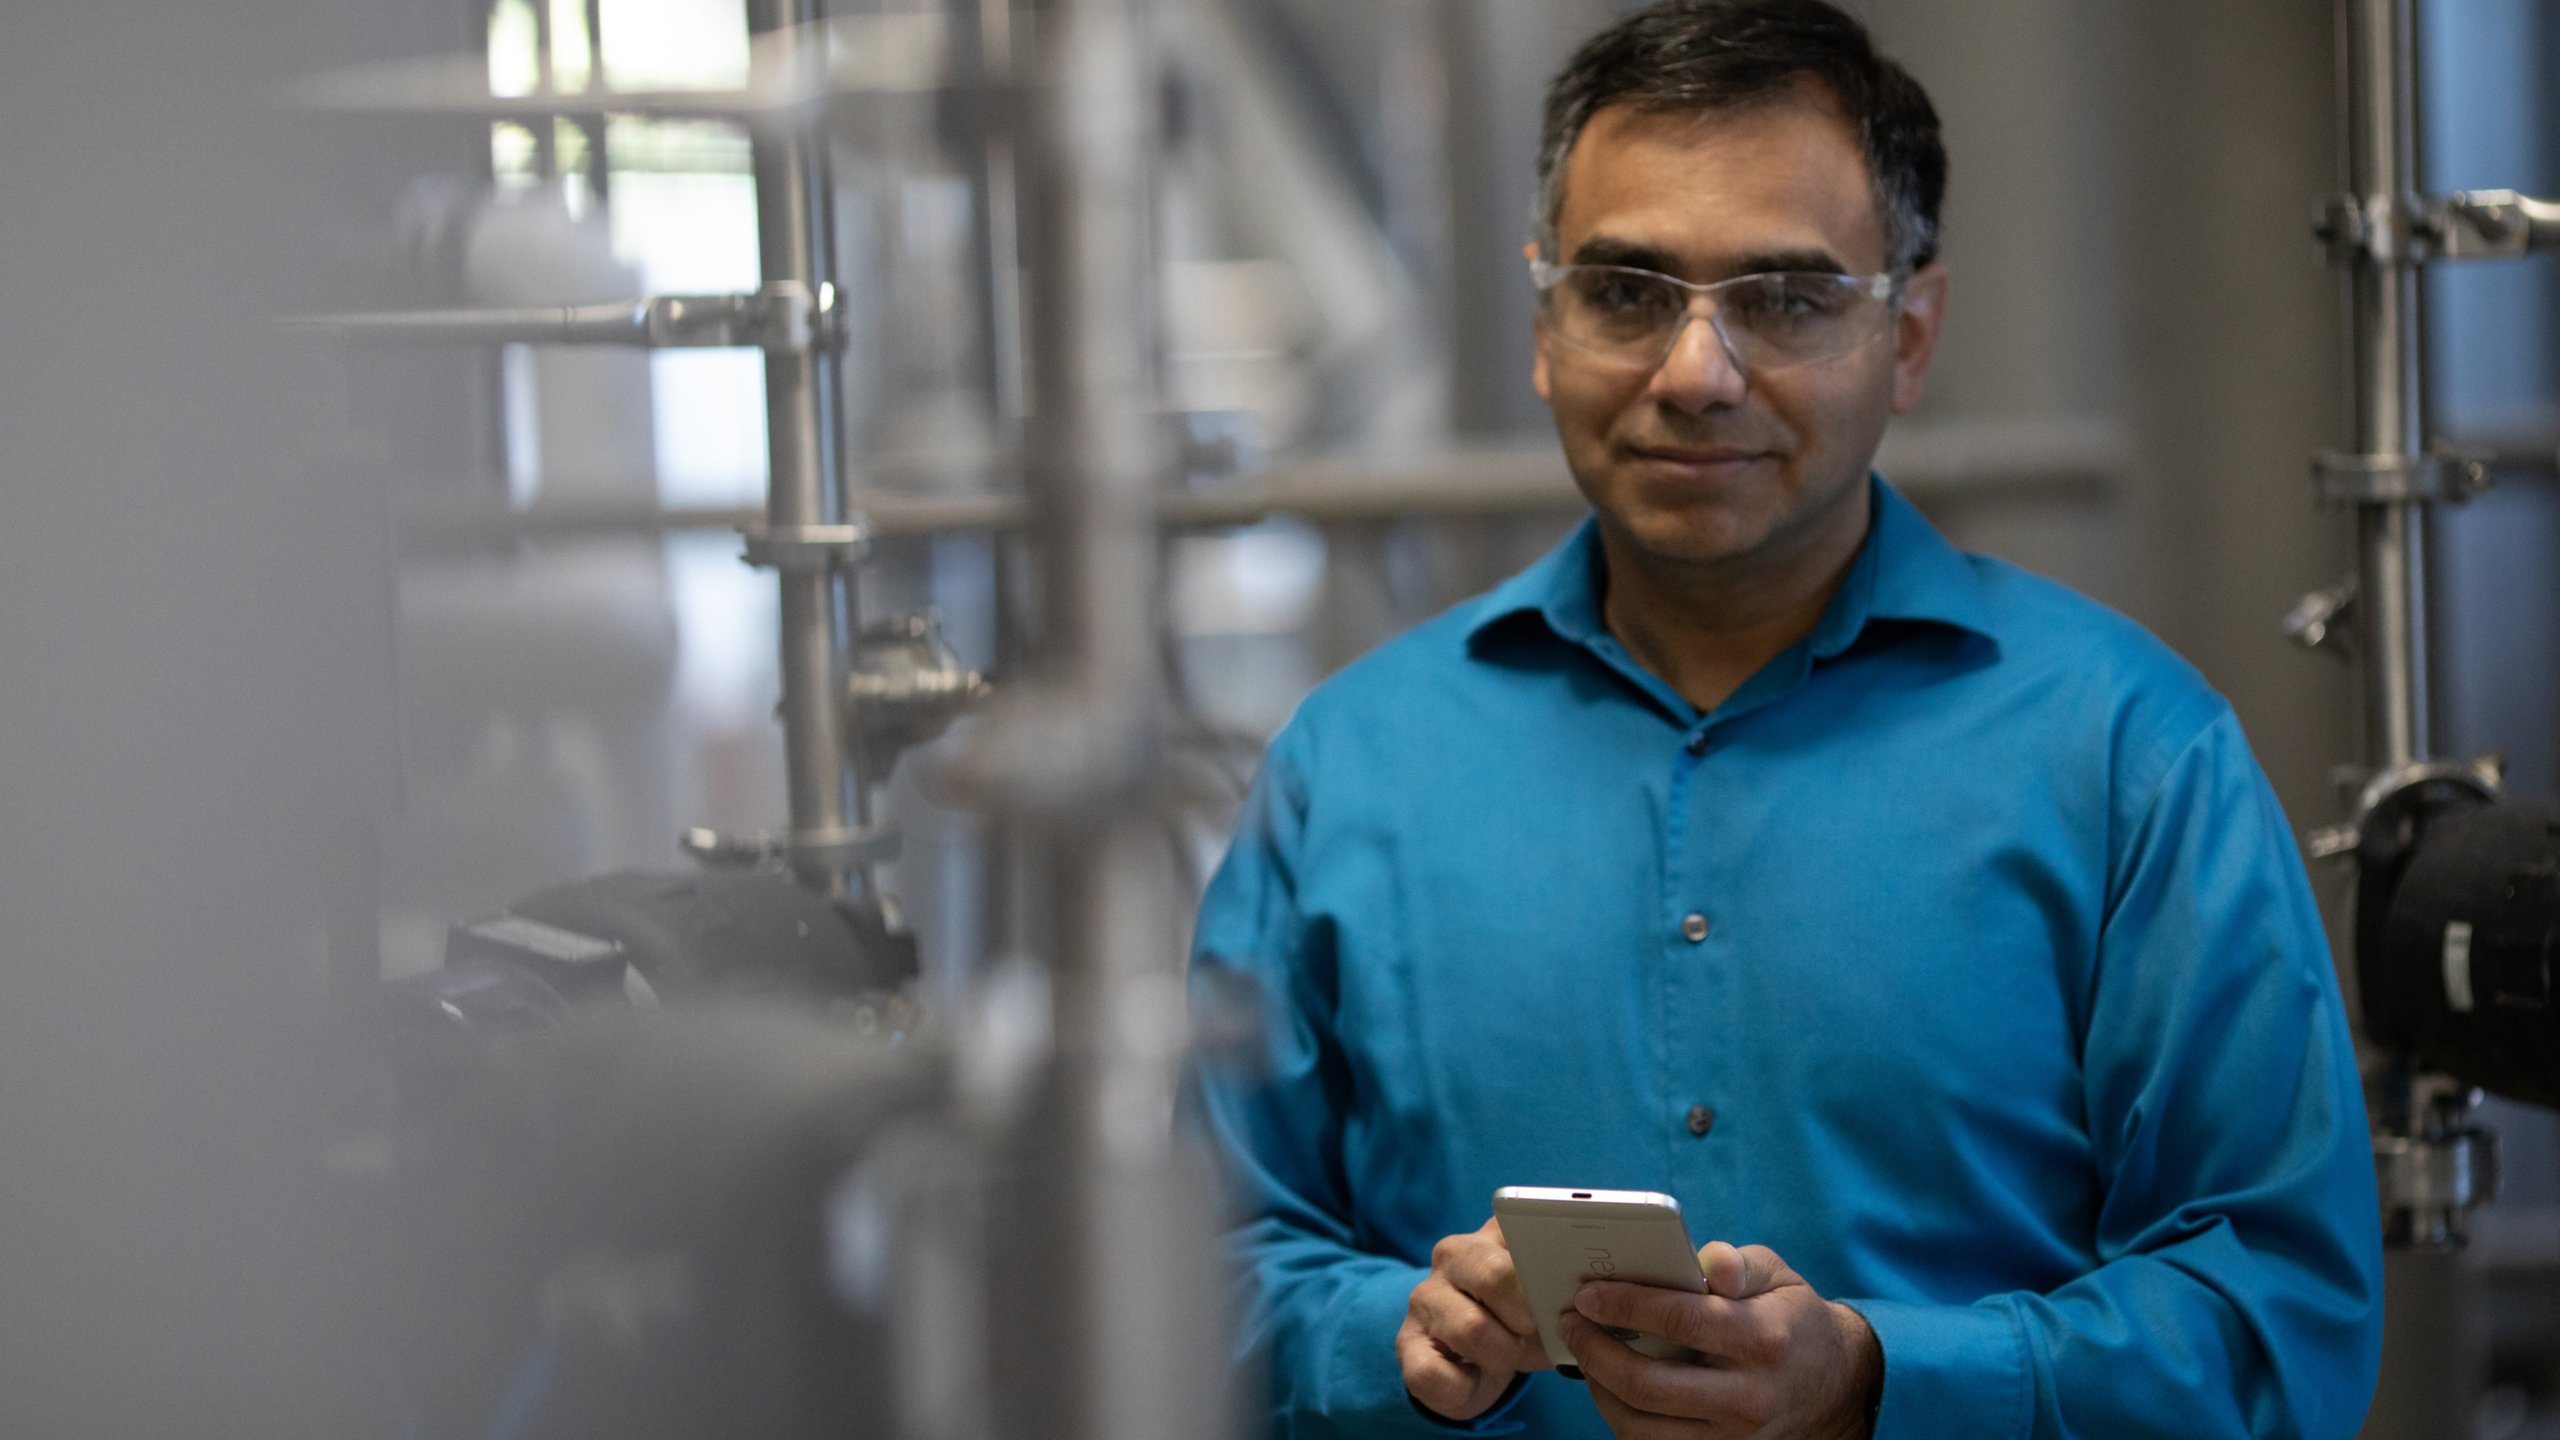 Un ingénieur en chemise bleue et en lunettes tenant dans sa main un téléphone portable dans une usine regarde droit devant lui